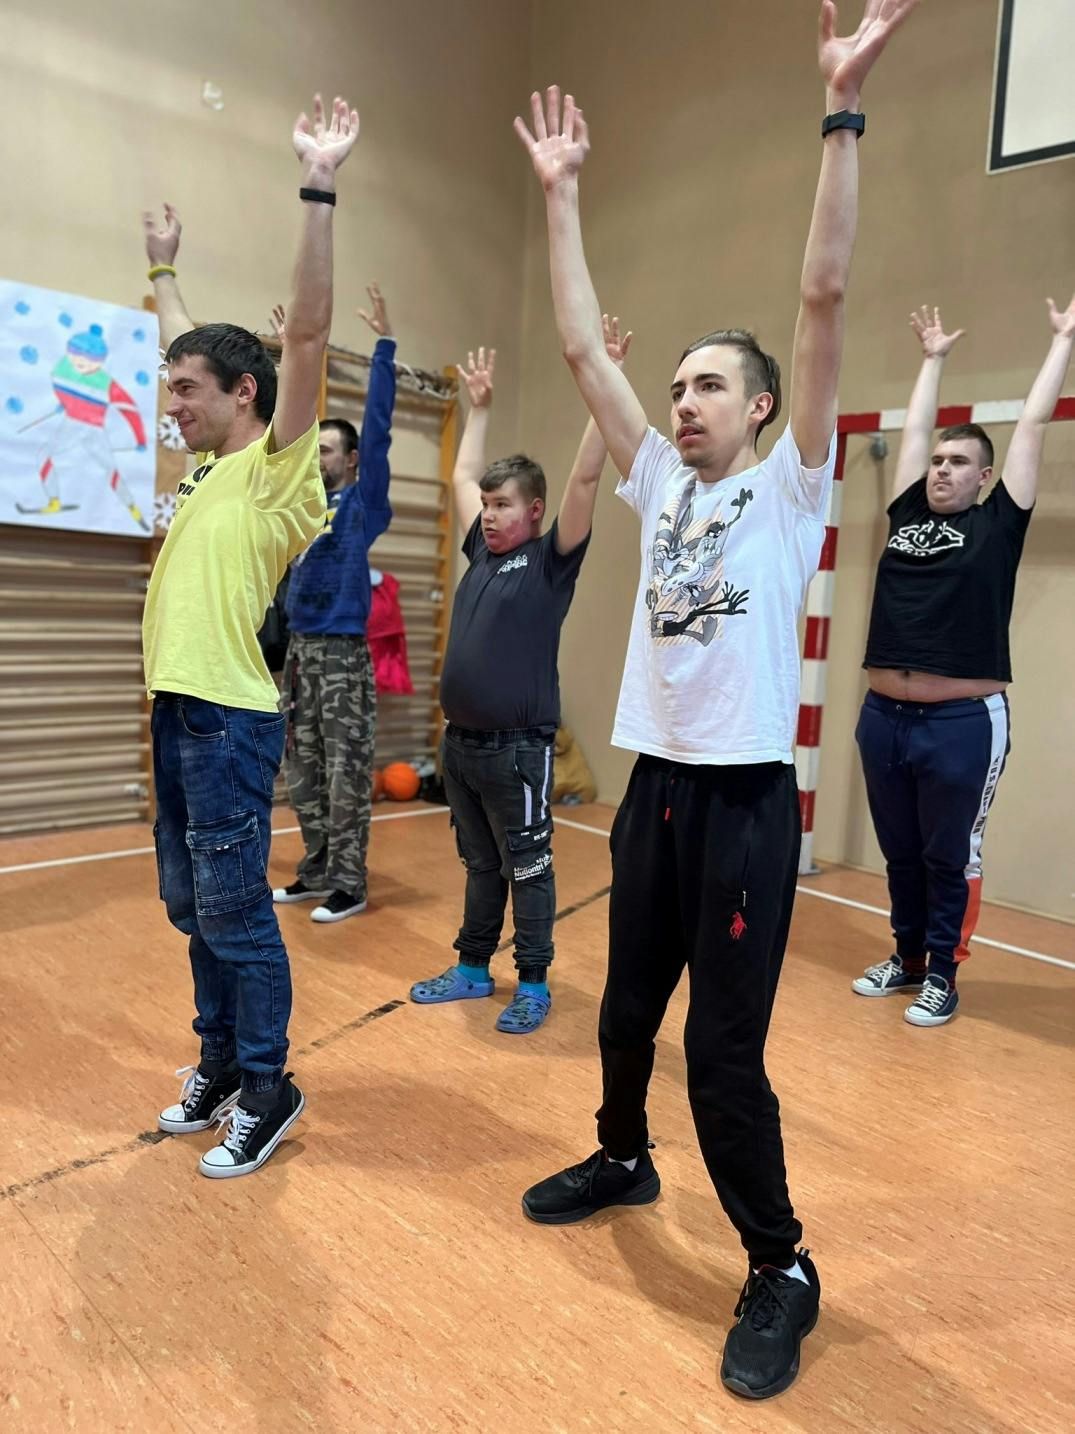 Dzień Aktywności Fizycznej | Uczniowie ćwiczą podnisząc ręce do góry.jpeg